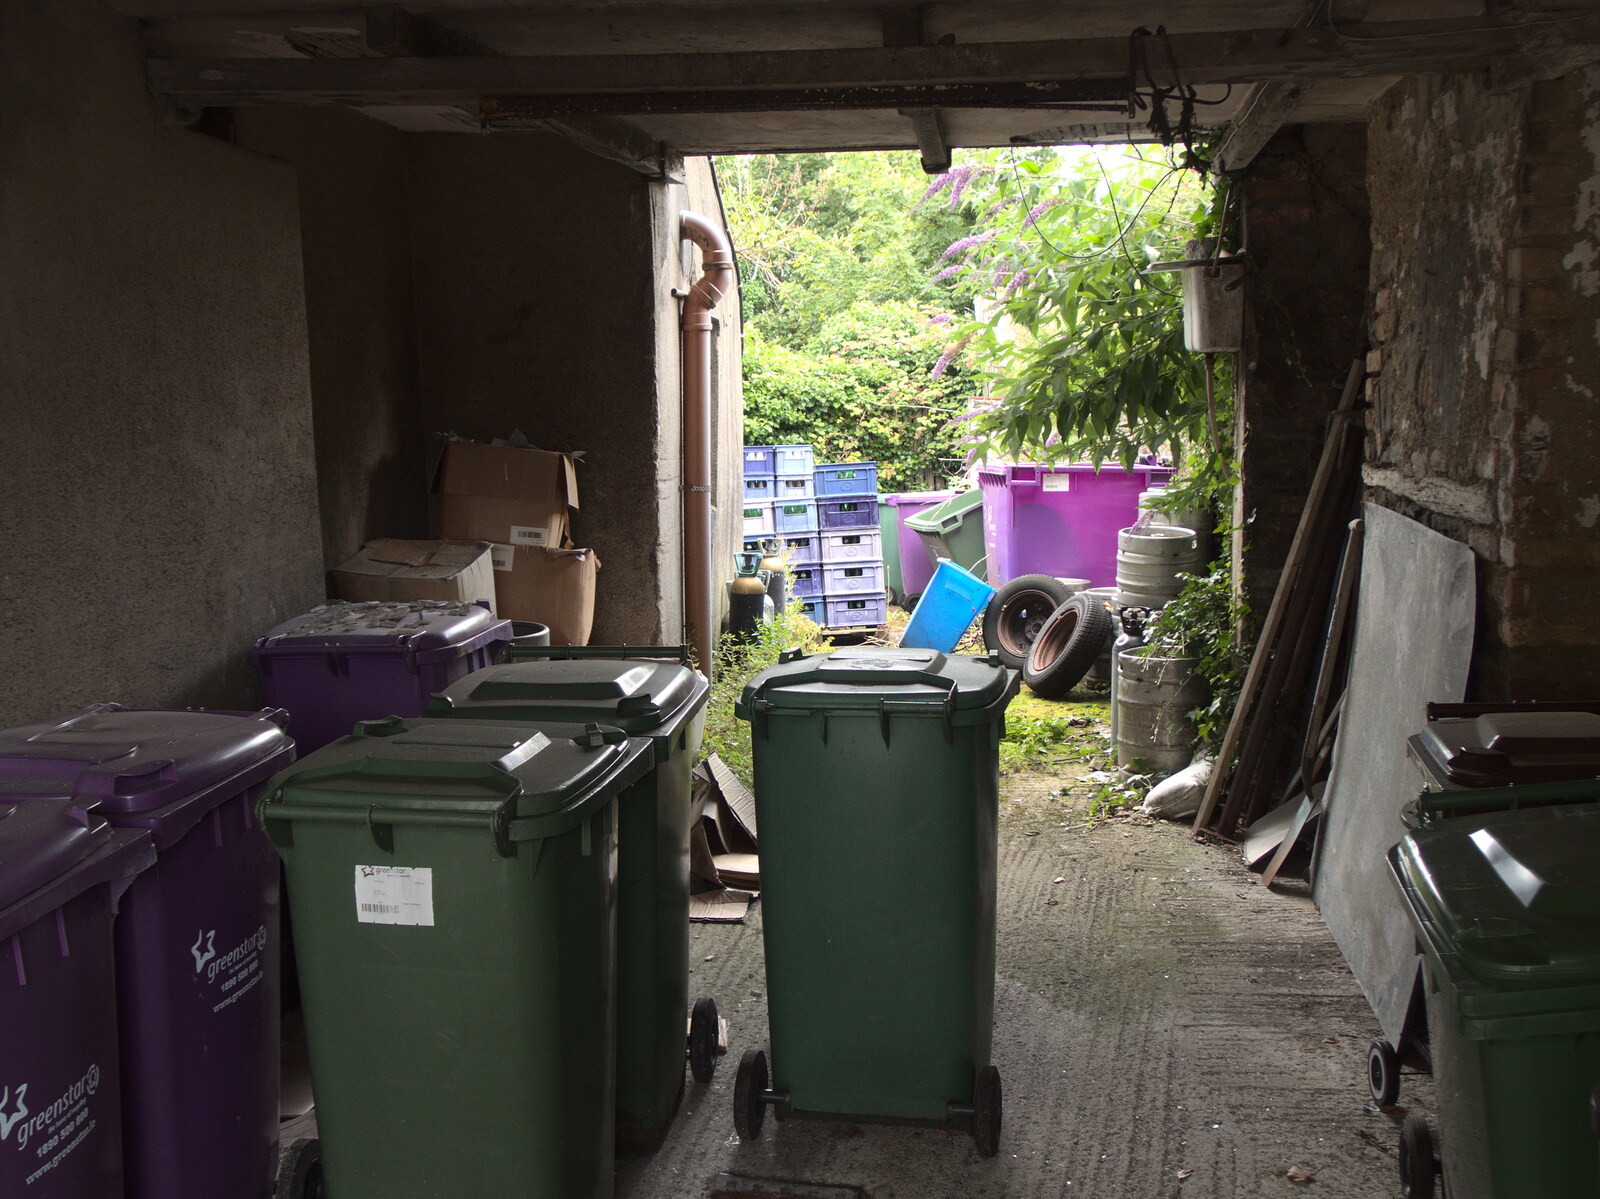 Wheelie bins in a garage from Walks Around Benbulben and Carrowmore, County Sligo, Ireland - 13th August 2021